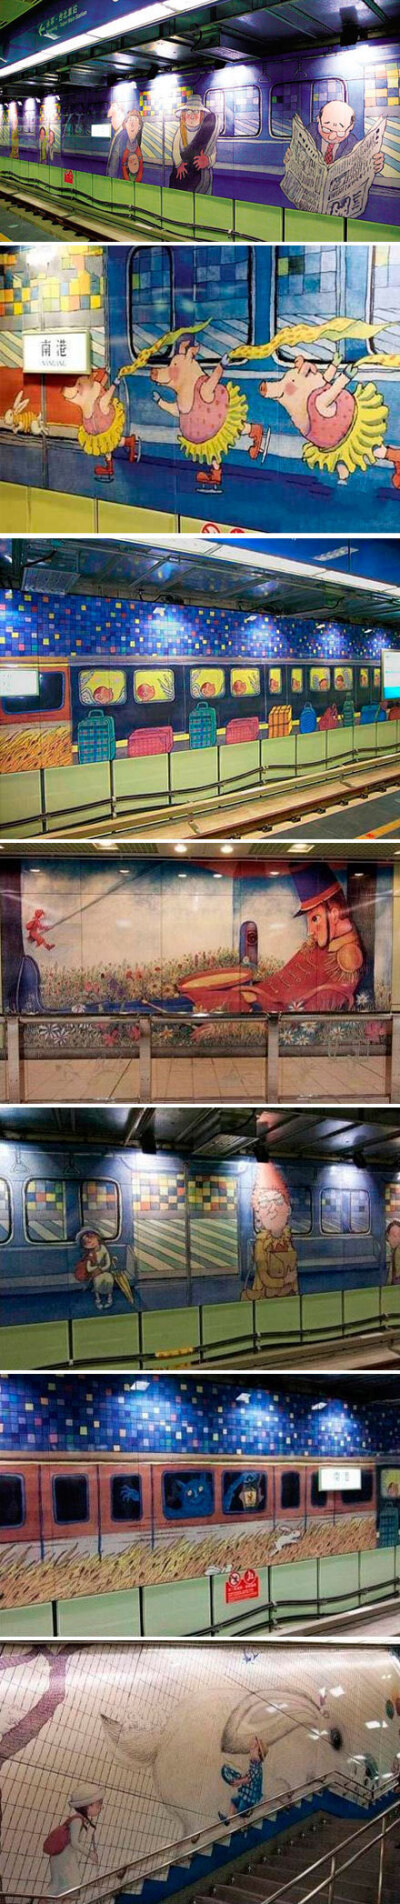 台北最漂亮的捷运站——台湾几米地下铁位于台湾南港站，站内充满了台湾著名绘本画家几米的大型壁画。